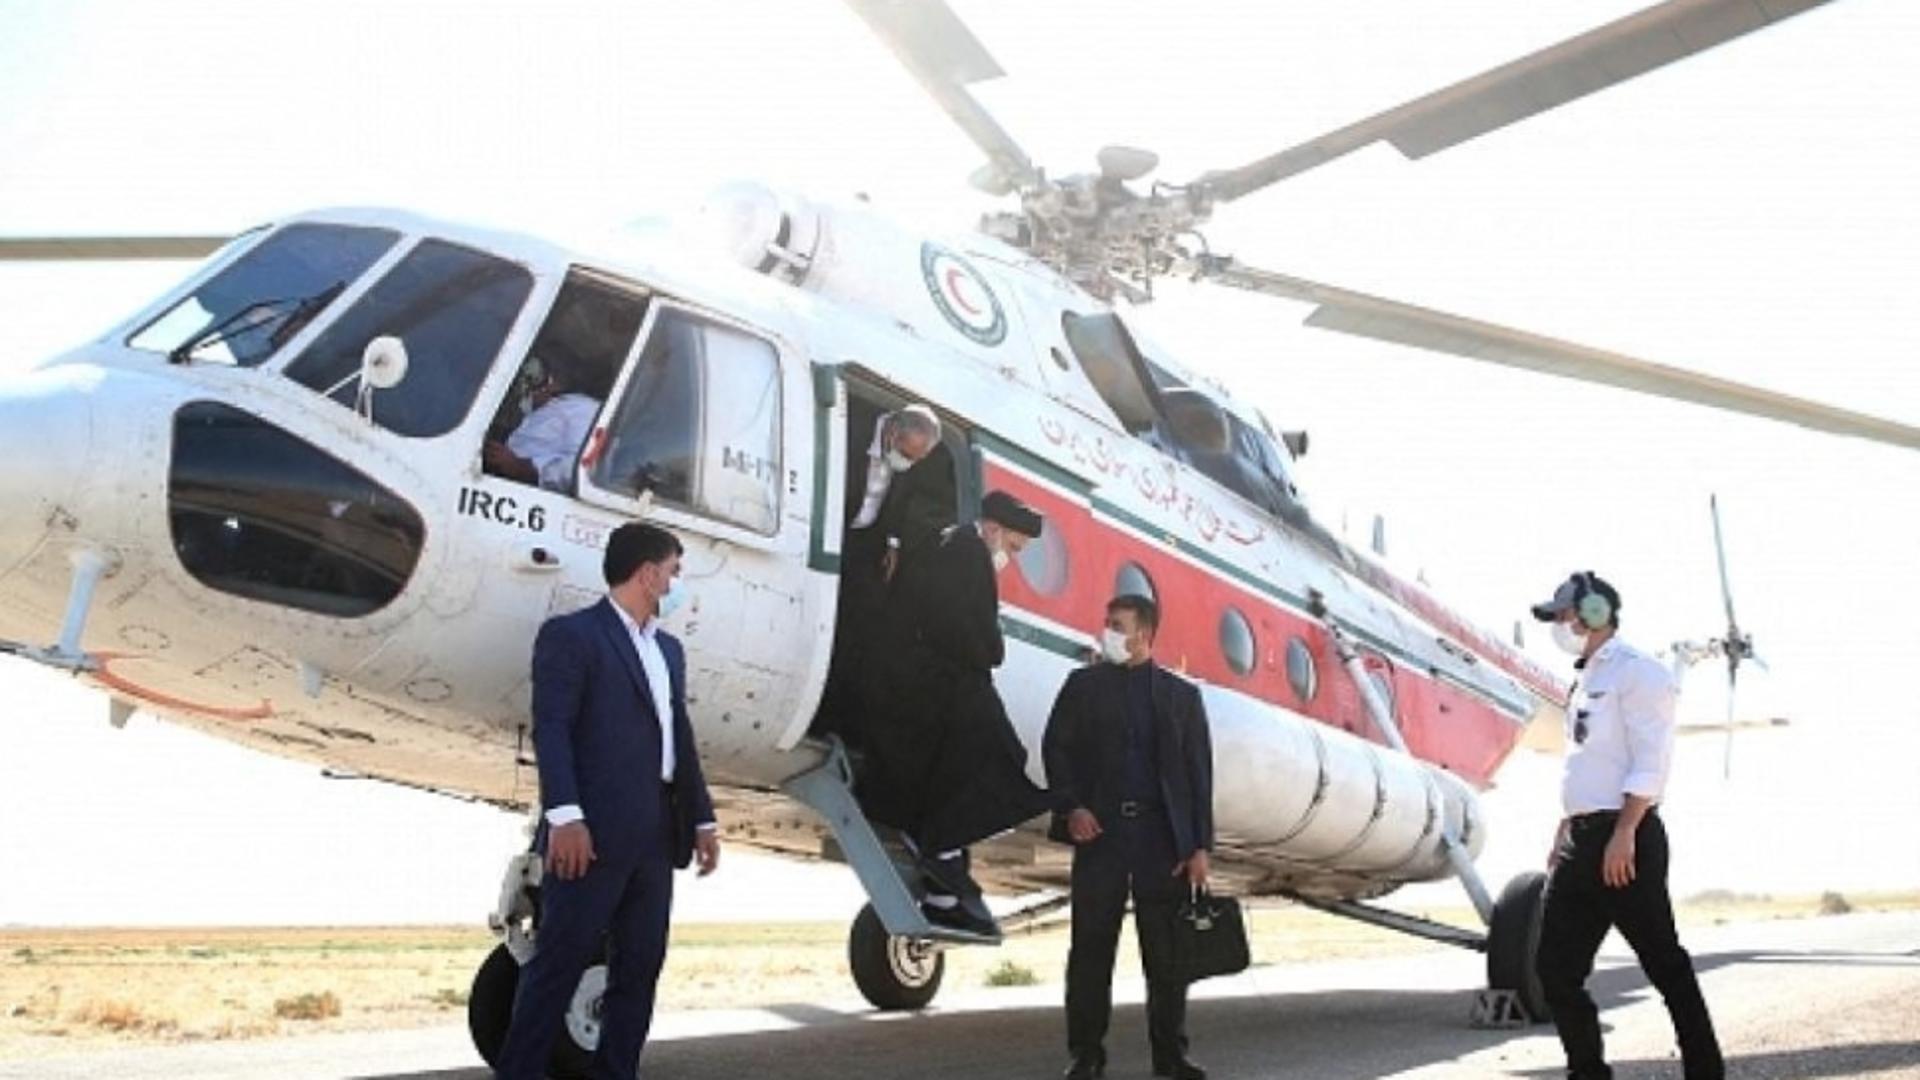 Elicopterul în care se afla preşedintele Ebrahim Raisi a fost găsit de echipele de căutare. Nu sunt informații despre starea persoanelor de la bord